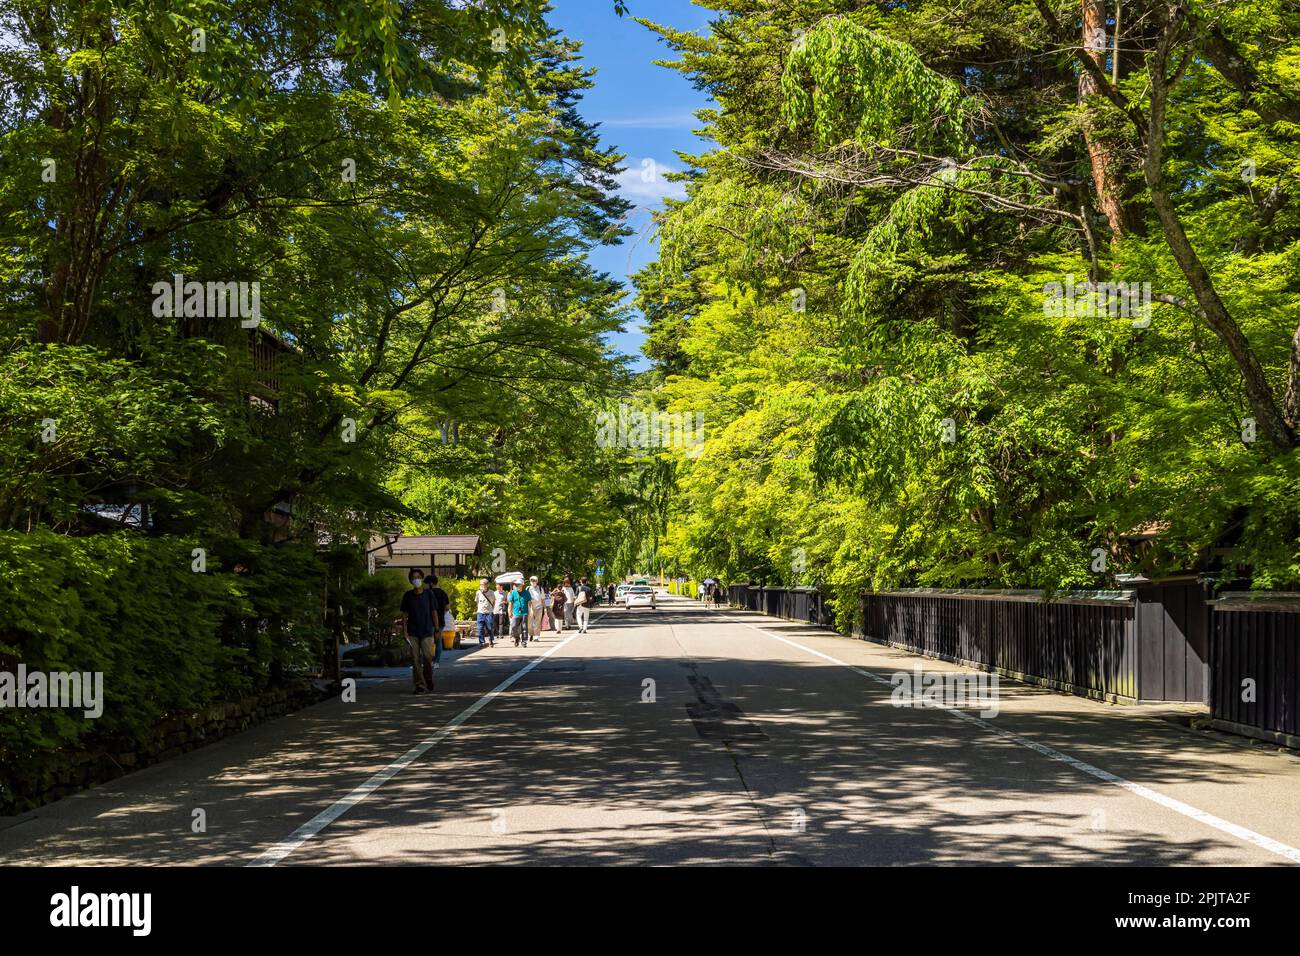 Rue de résidence samouraï, avec feuilles vertes d'été, ville historique de Kakudate (kakunodate), ville de Senboku, Akita, Tohoku, Japon, Asie de l'est, Asie Banque D'Images